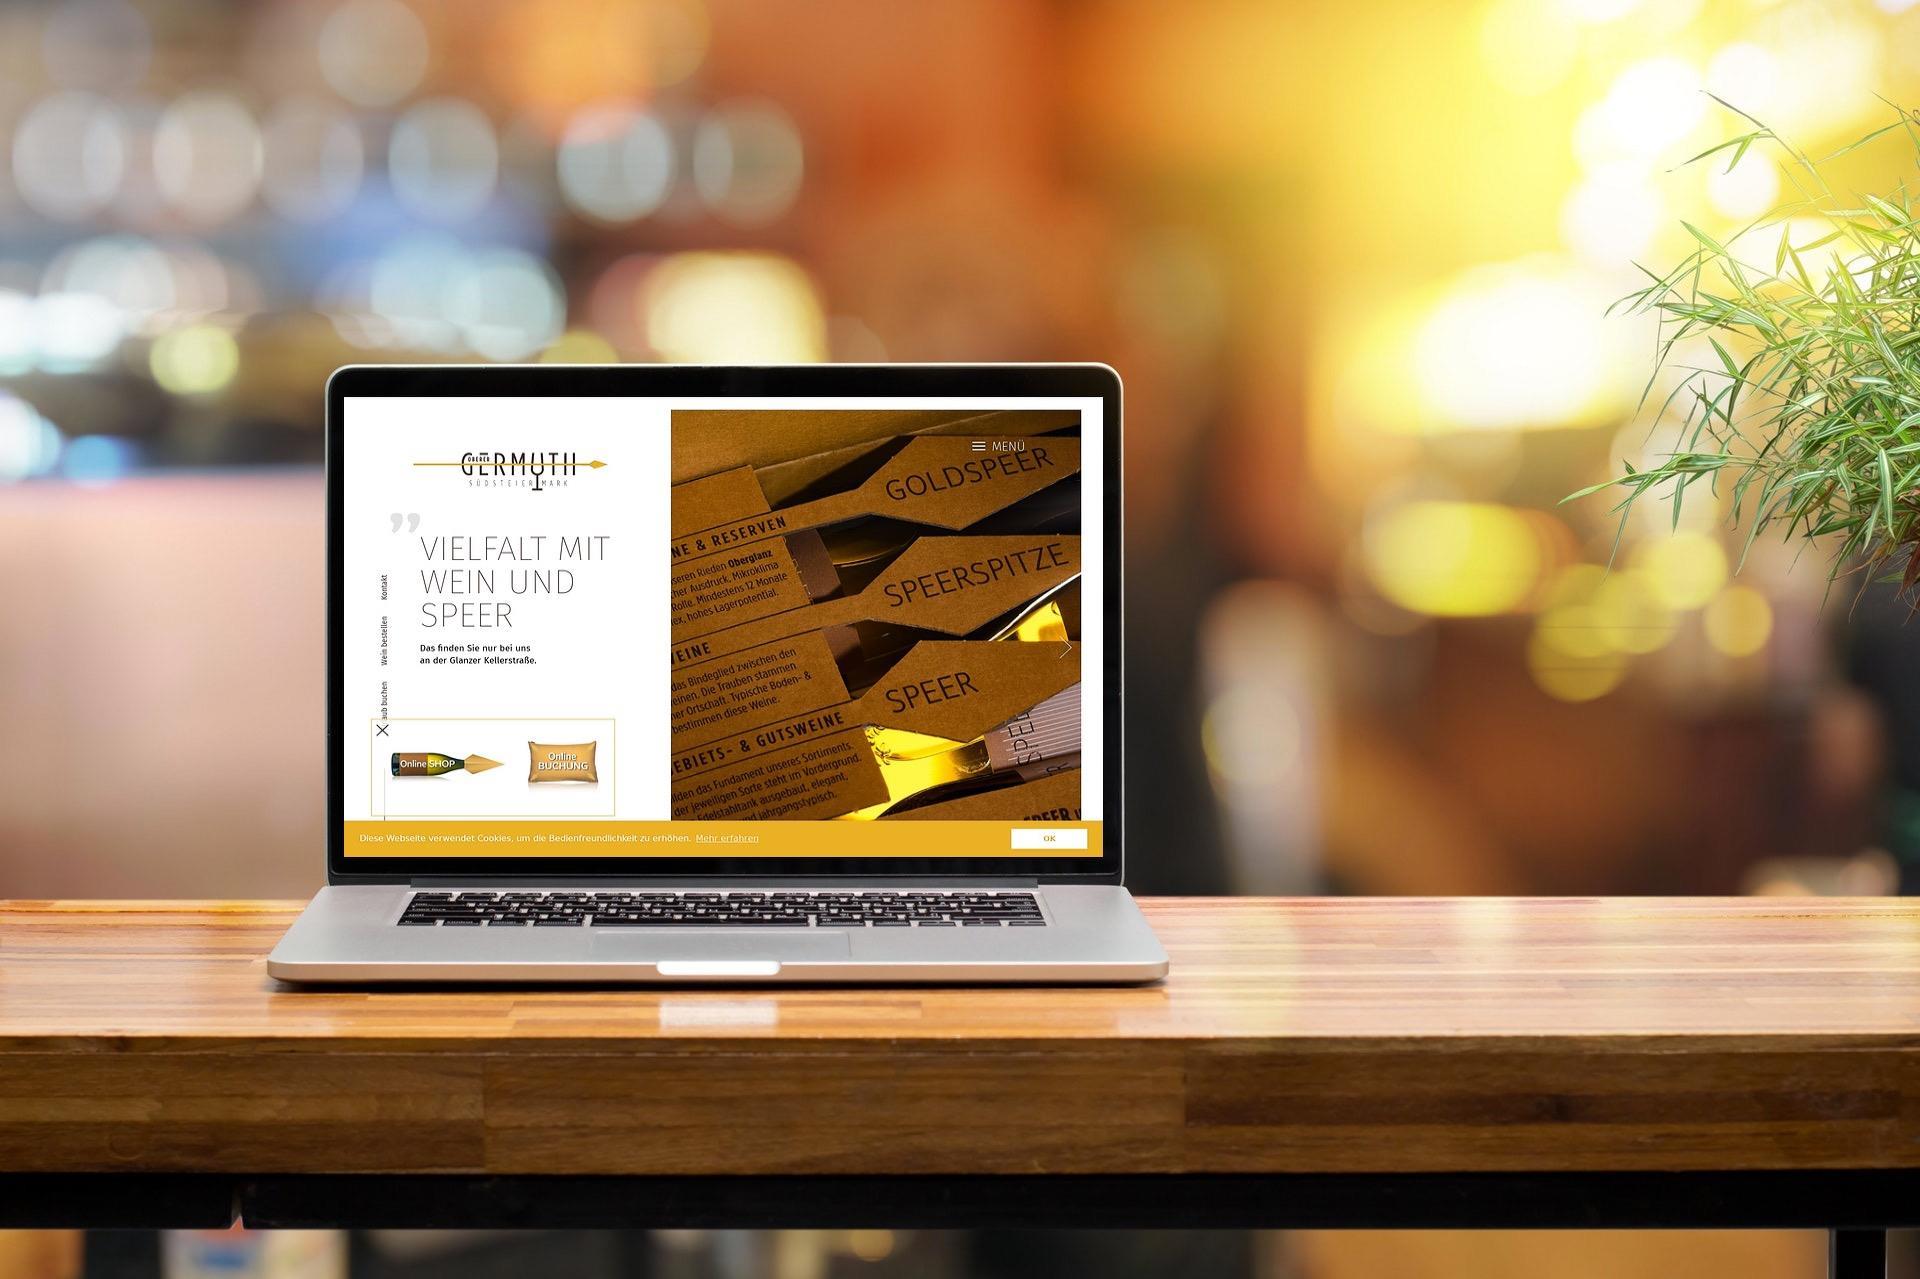 Germuth şaraphanesi için yeni web mağazası